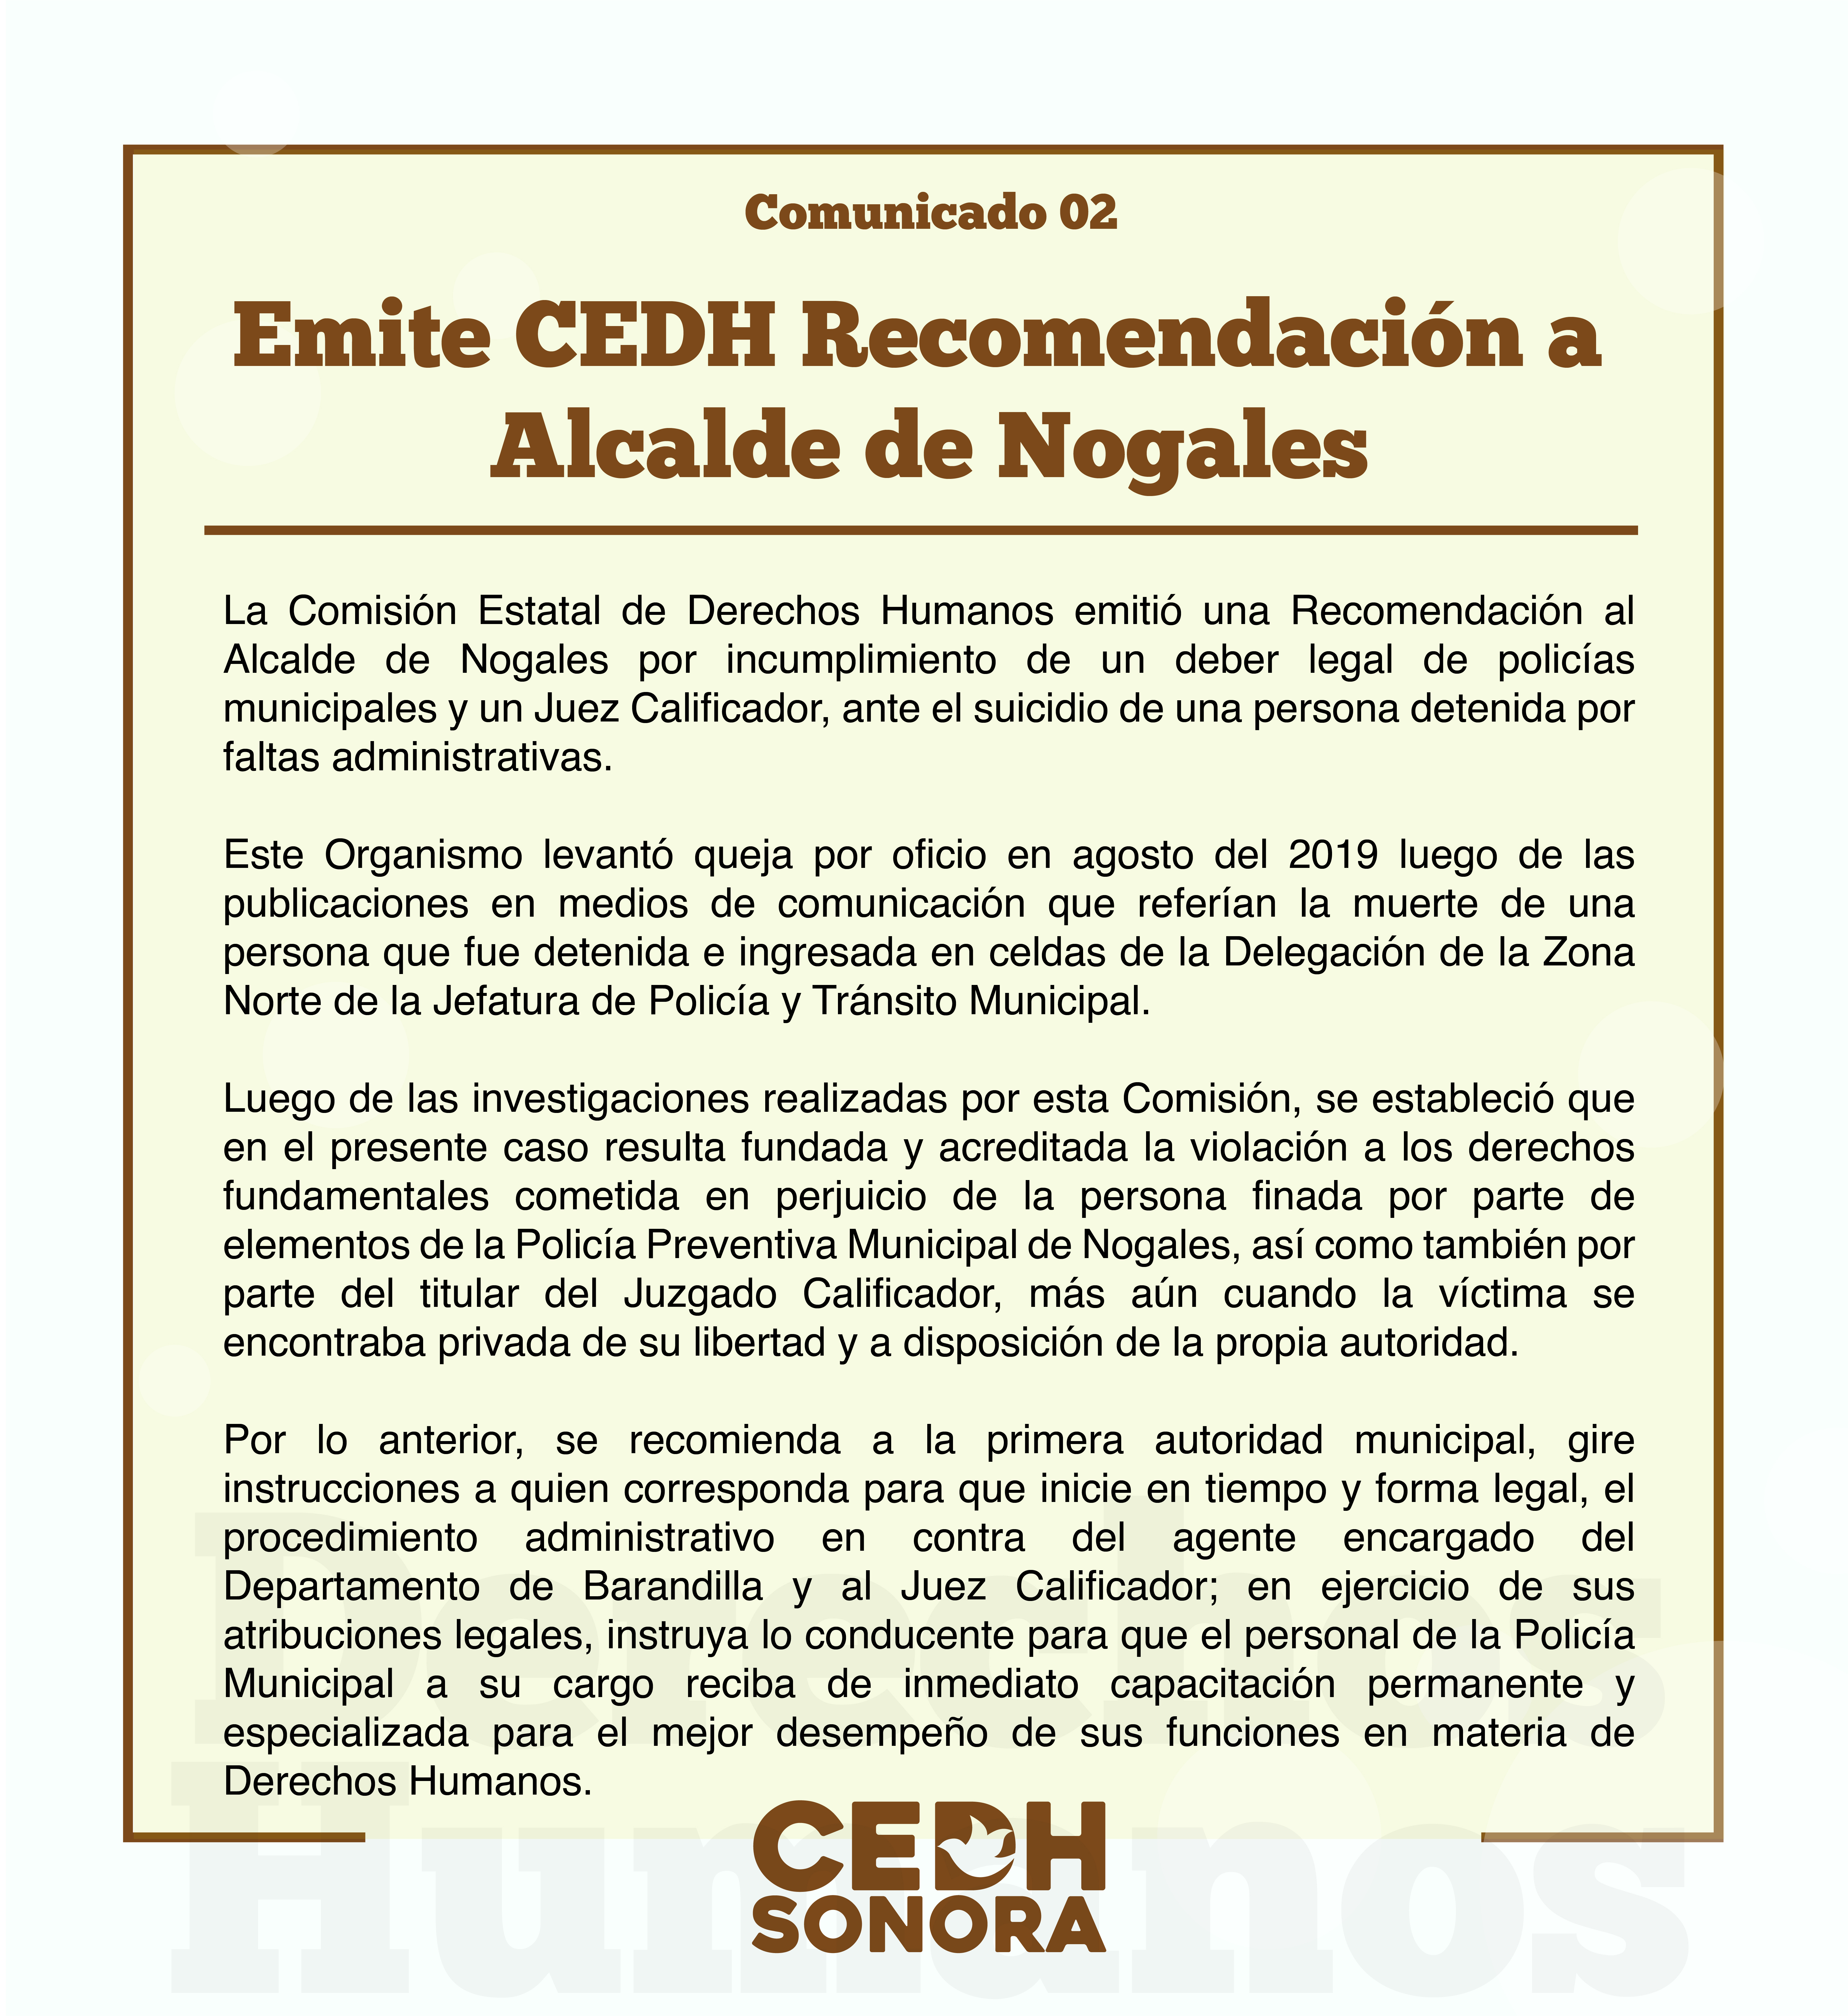 Emite CEDH Recomendación a Alcalde de Nogales